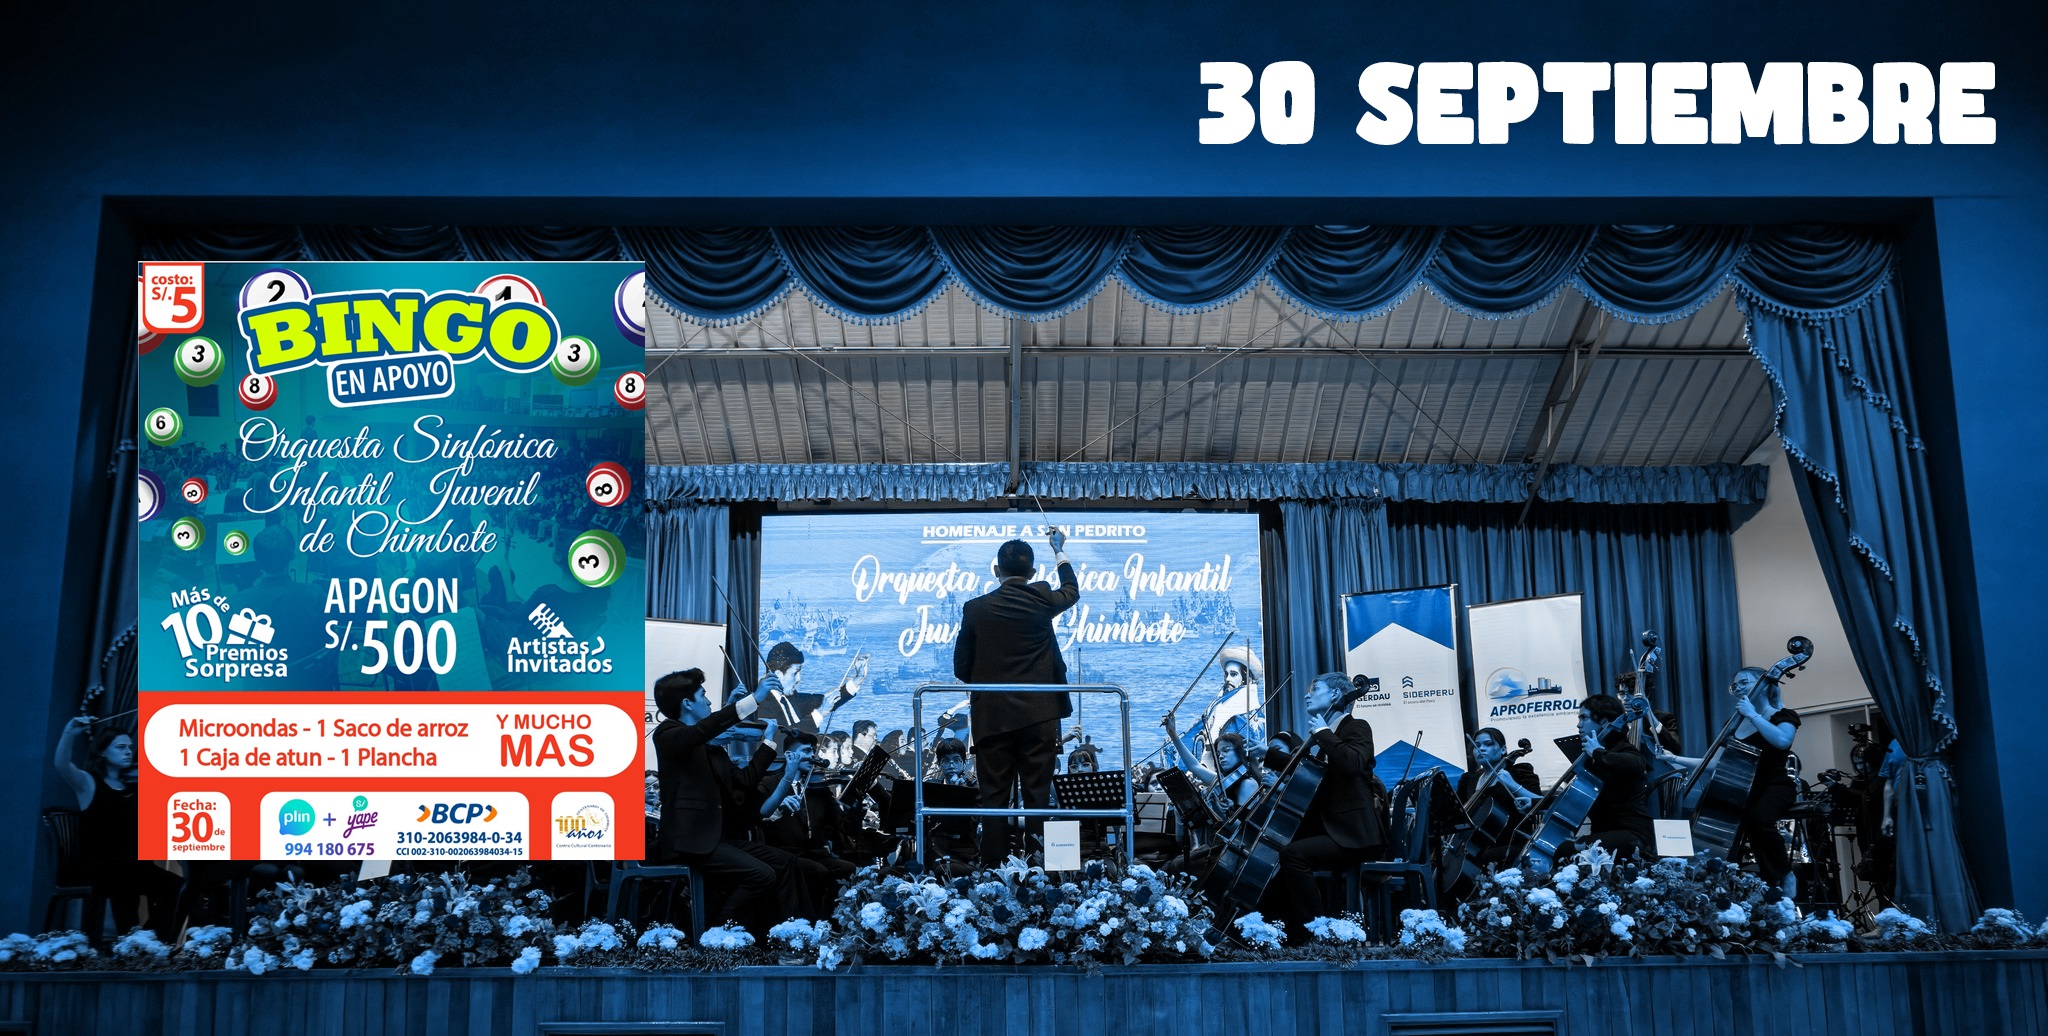 Organizan bingo en apoyo a la Orquesta Sinfónica de Chimbote